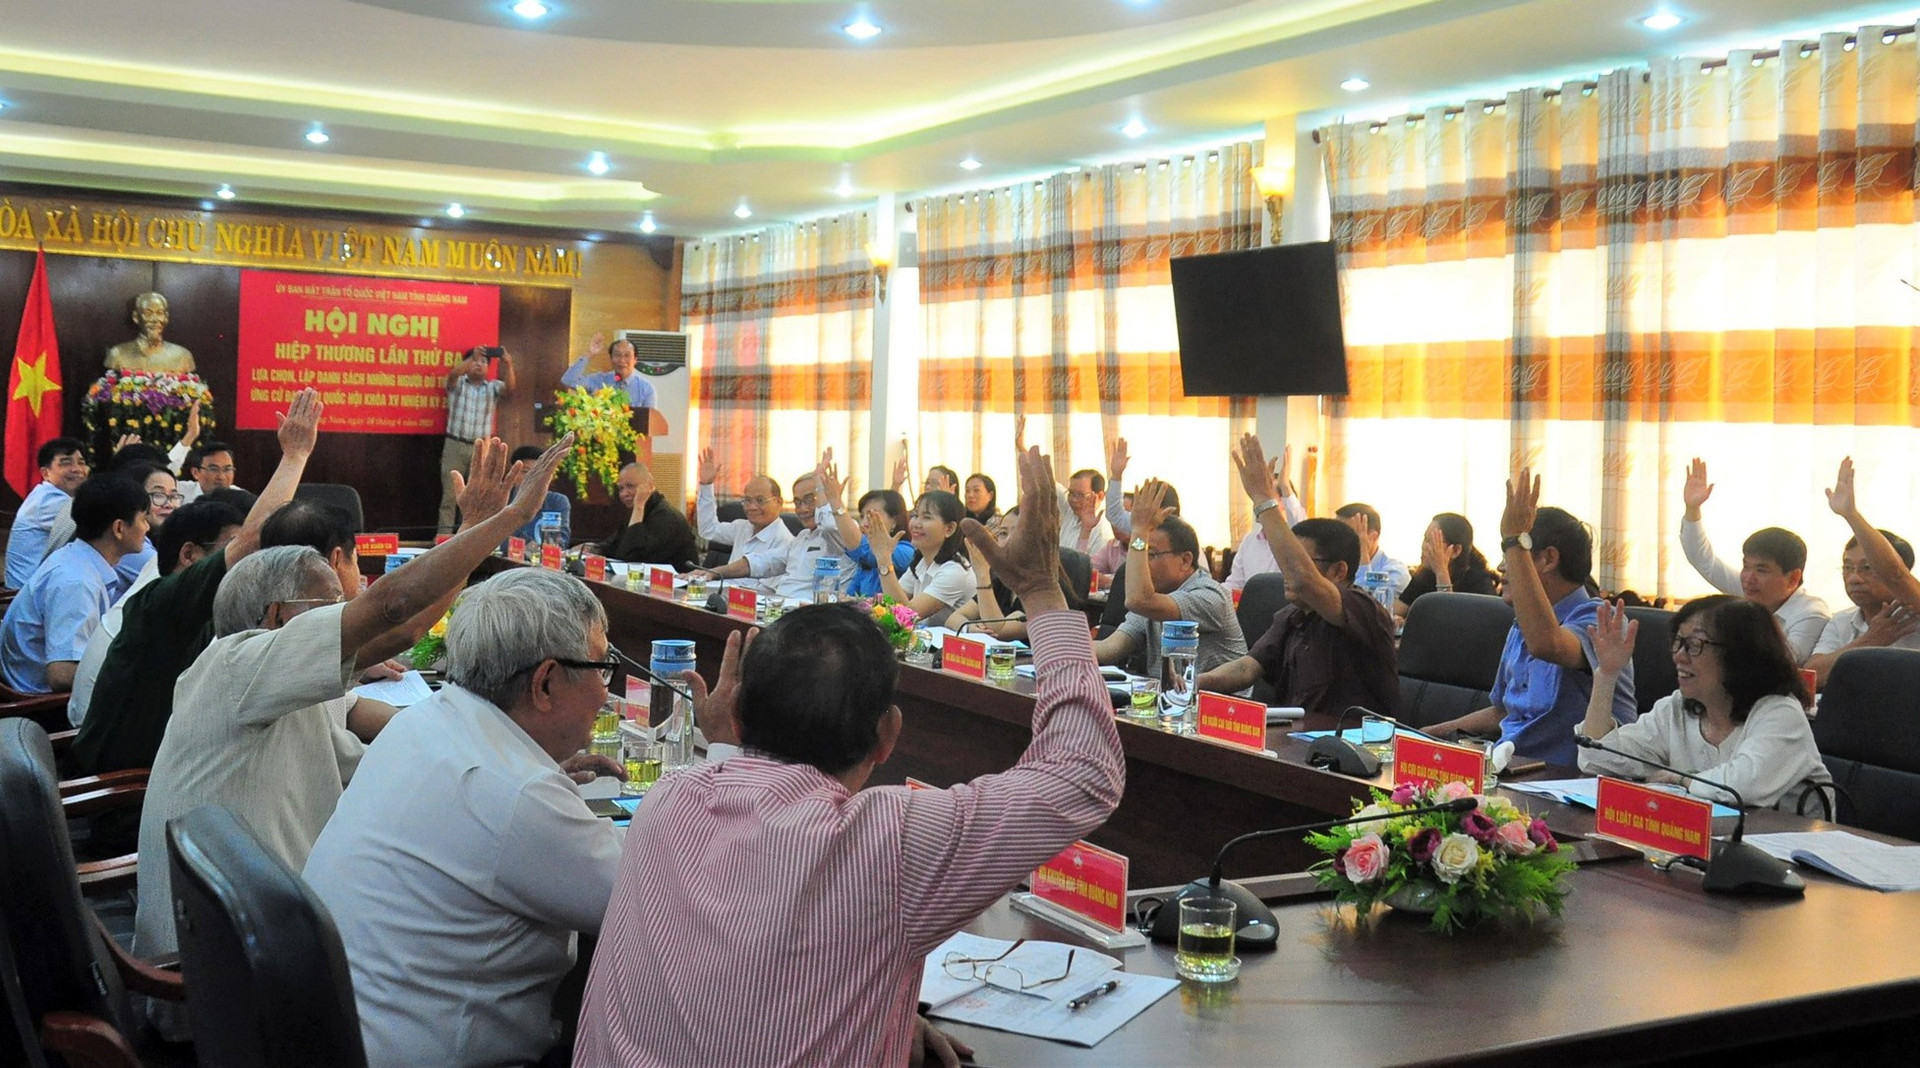 Ủy ban MTTQ Việt Nam tỉnh tổ chức hiệp thương giới thiệu người ứng cử. Ảnh: V.A